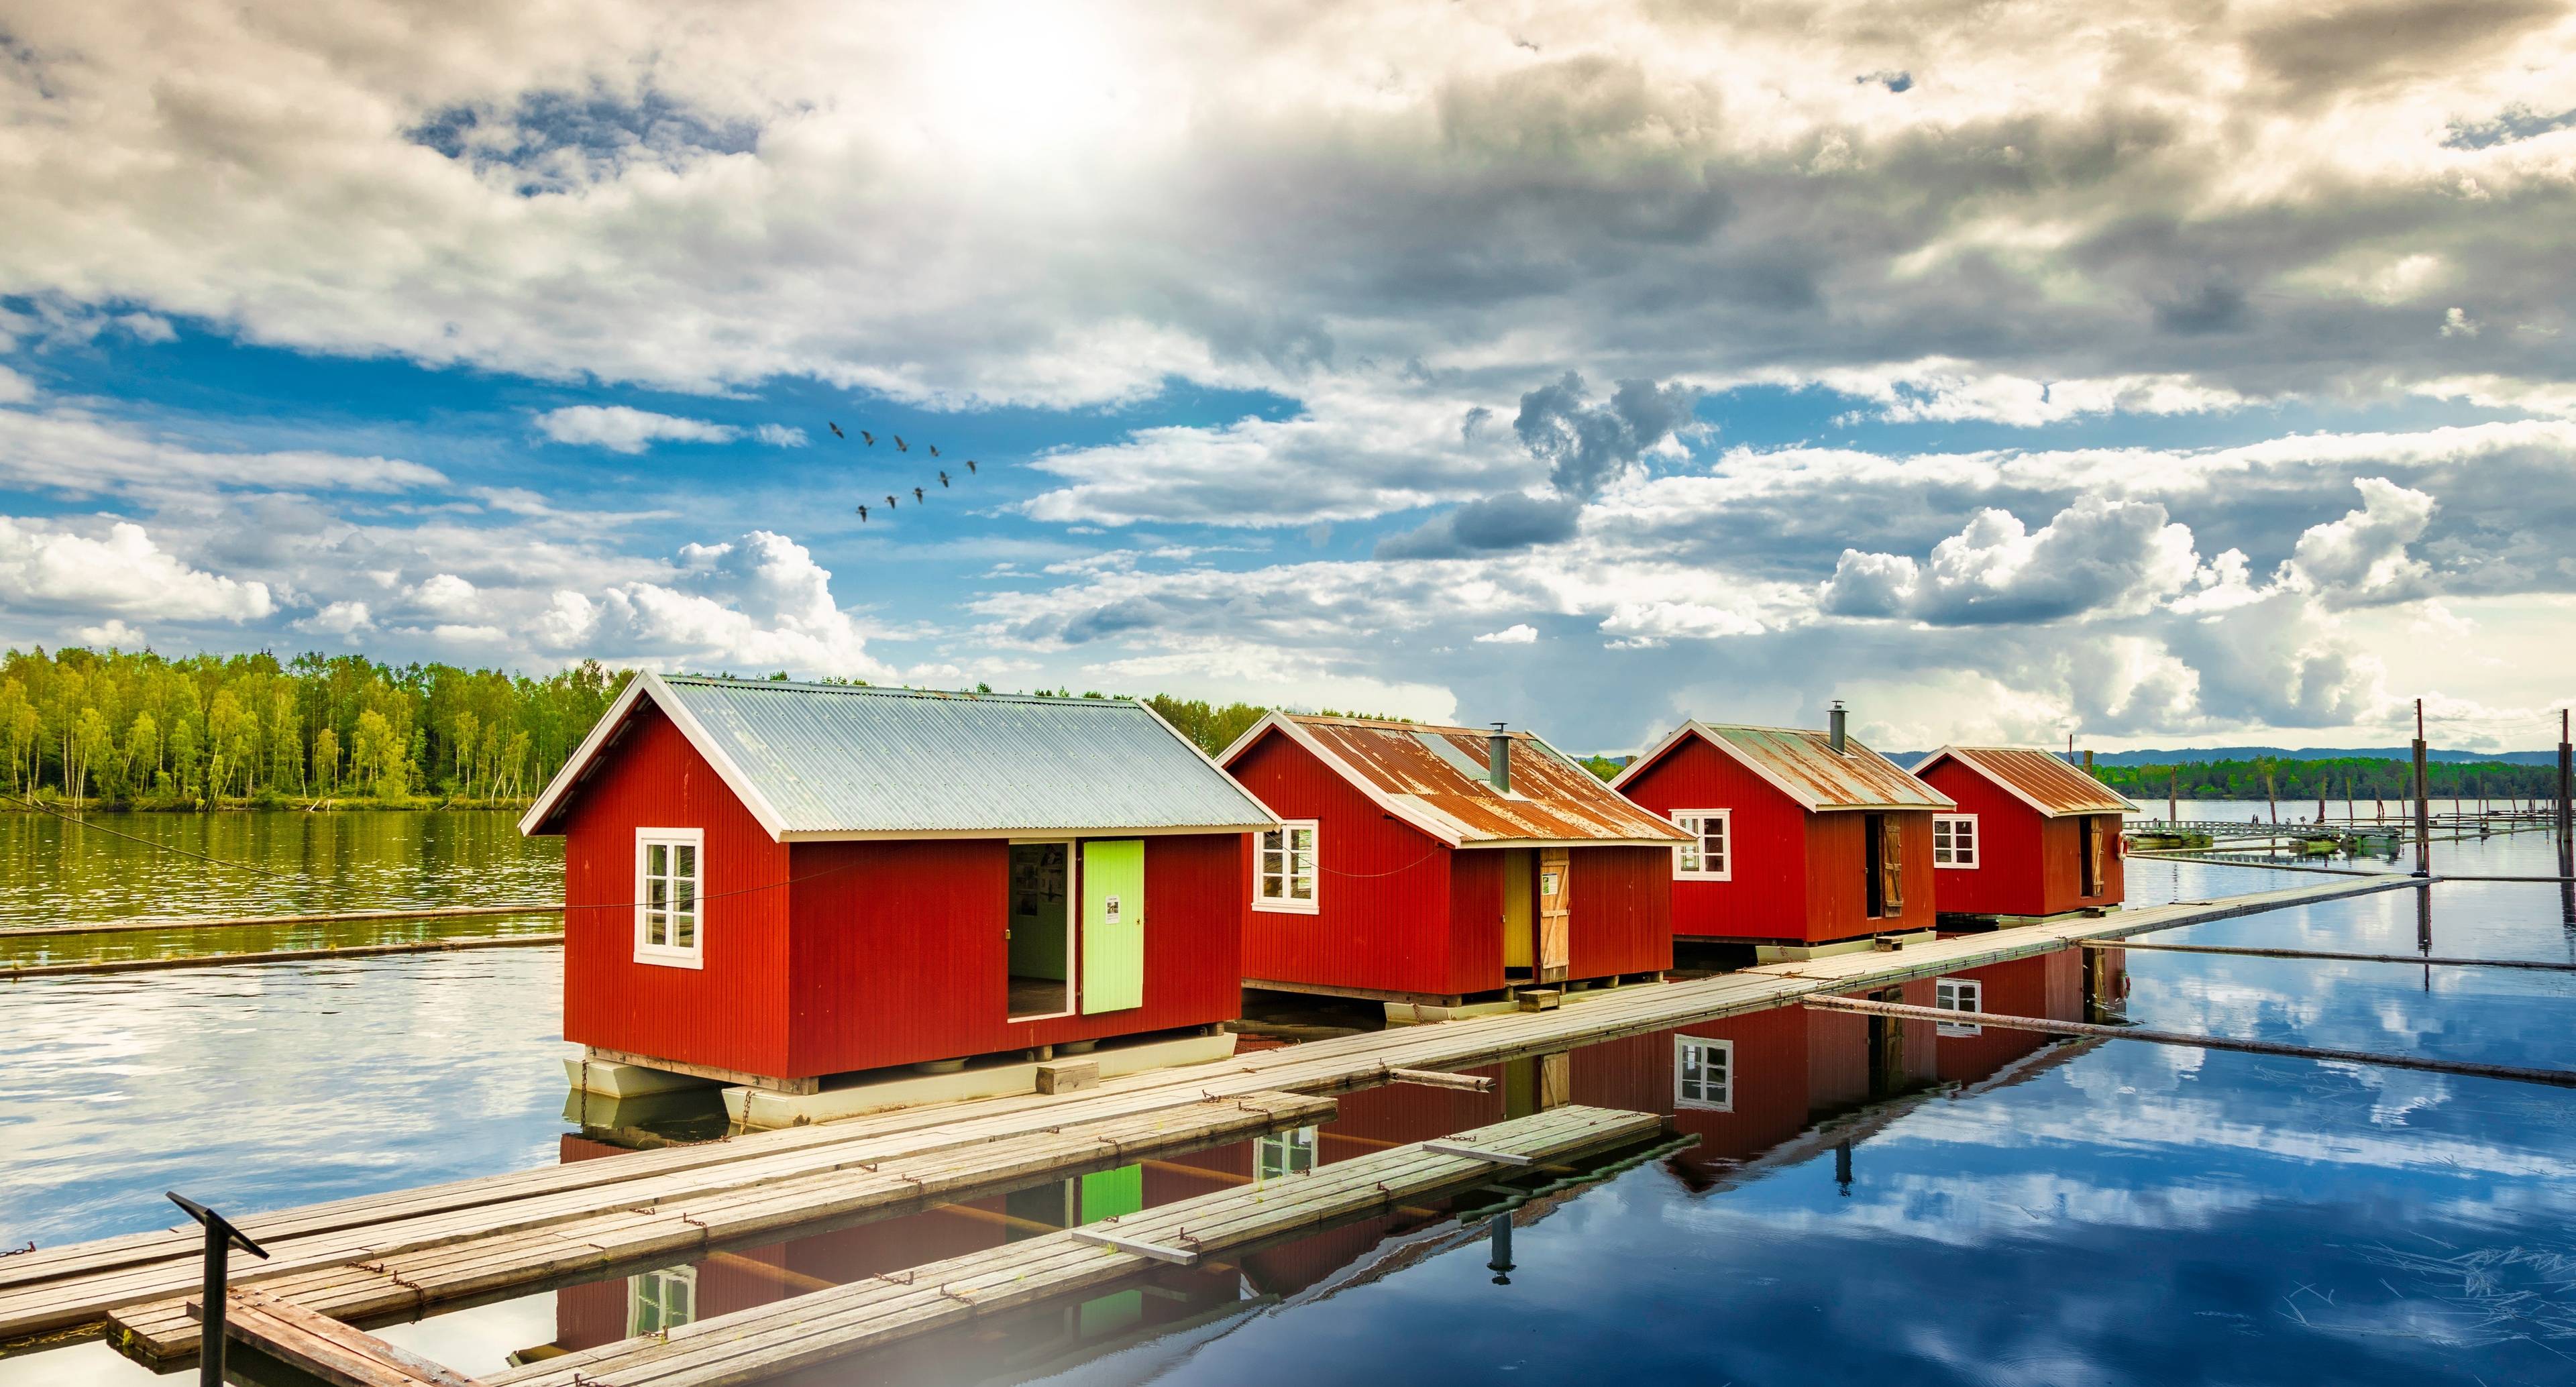 Fröhliches Abenteuer durch das norwegische Land & erfrischende Orte